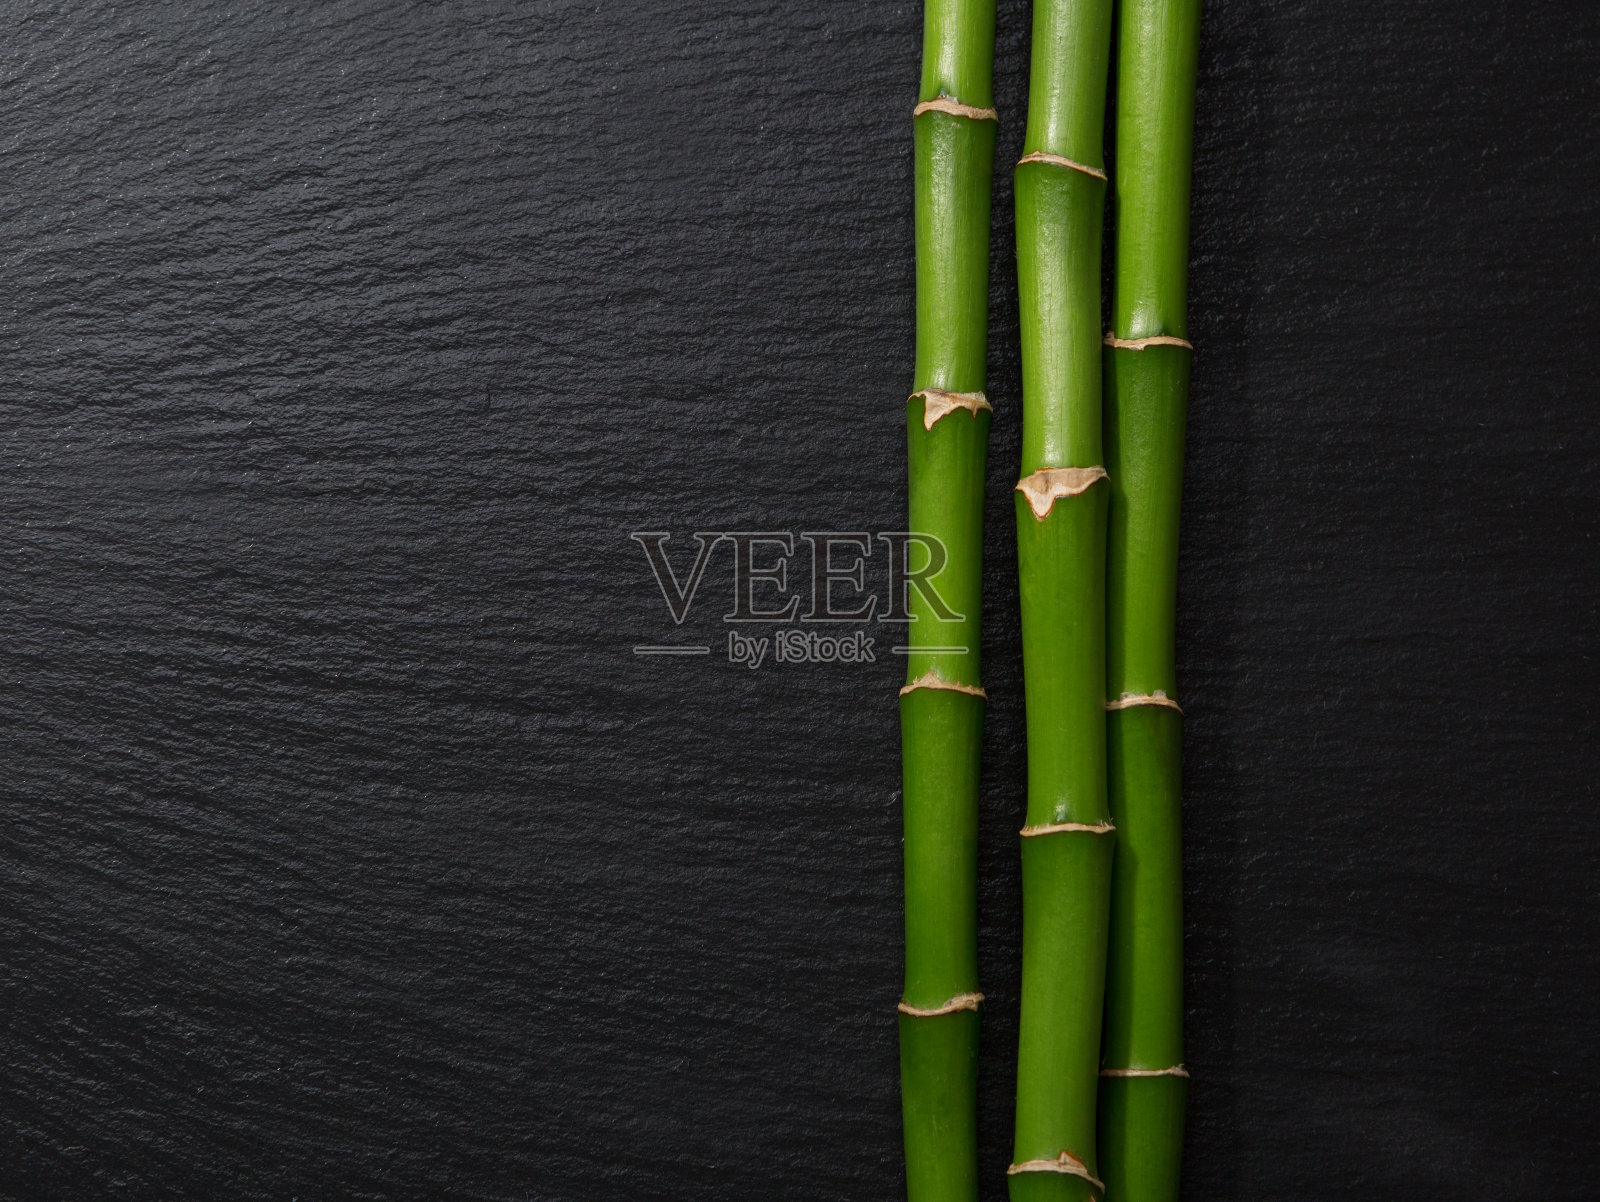 三根竹枝躺在潮湿的黑石板上照片摄影图片